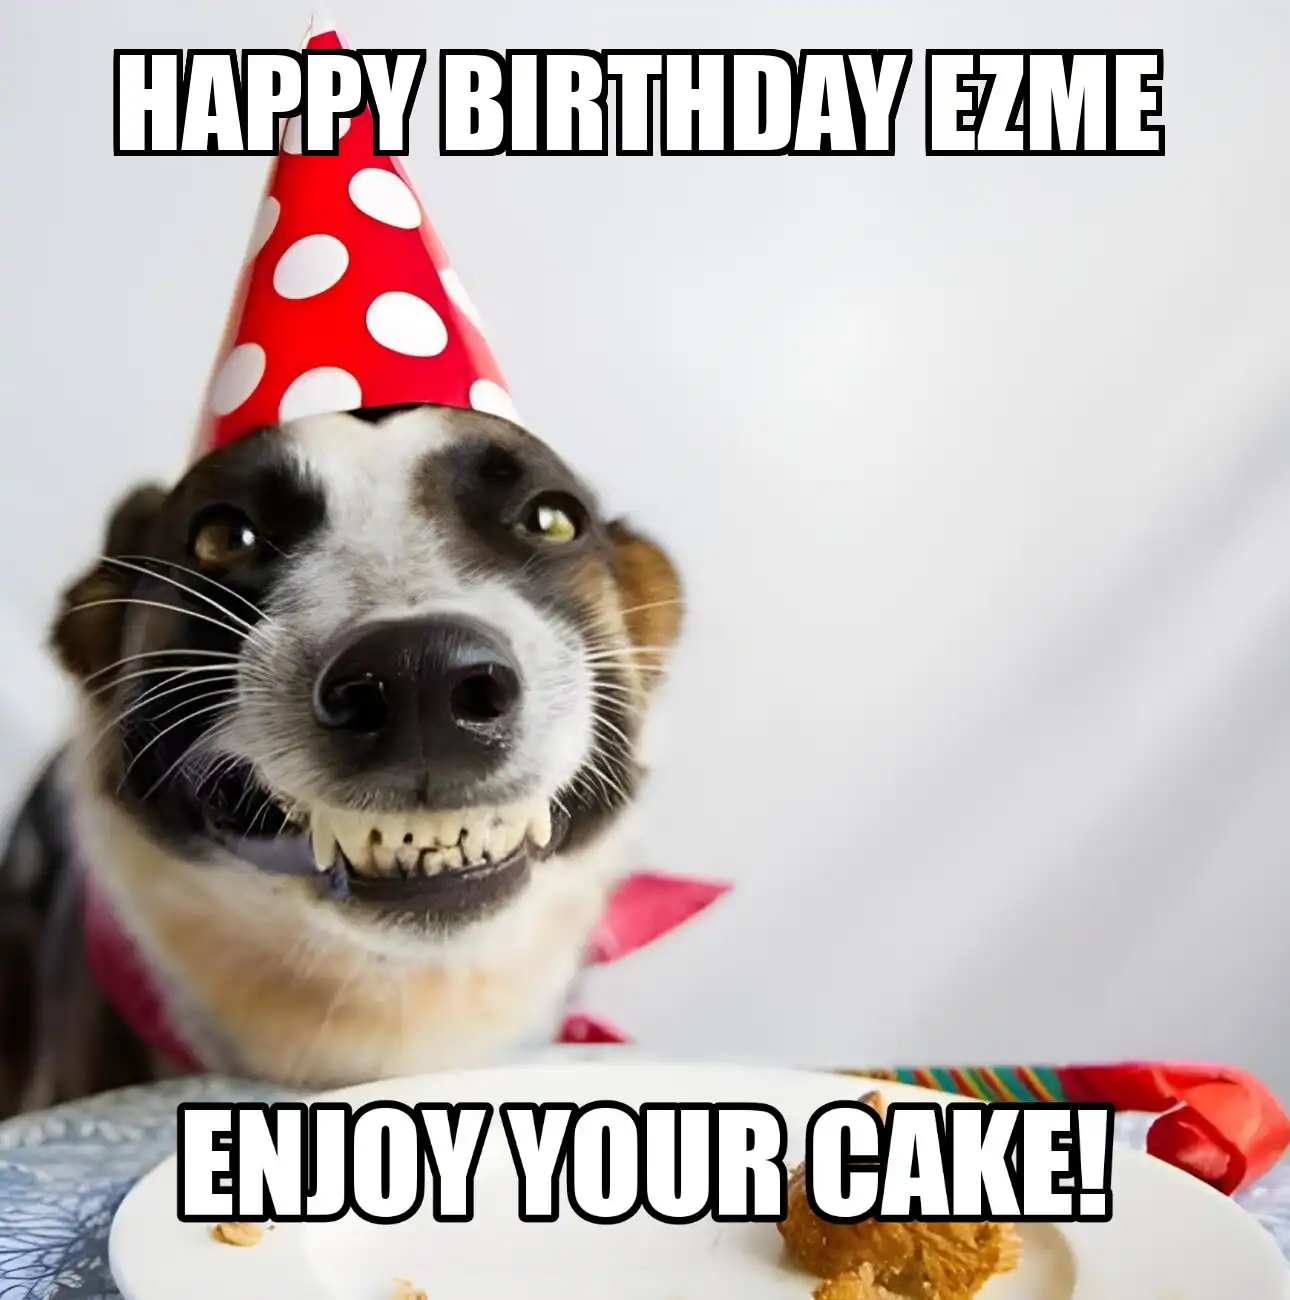 Happy Birthday Ezme Enjoy Your Cake Dog Meme